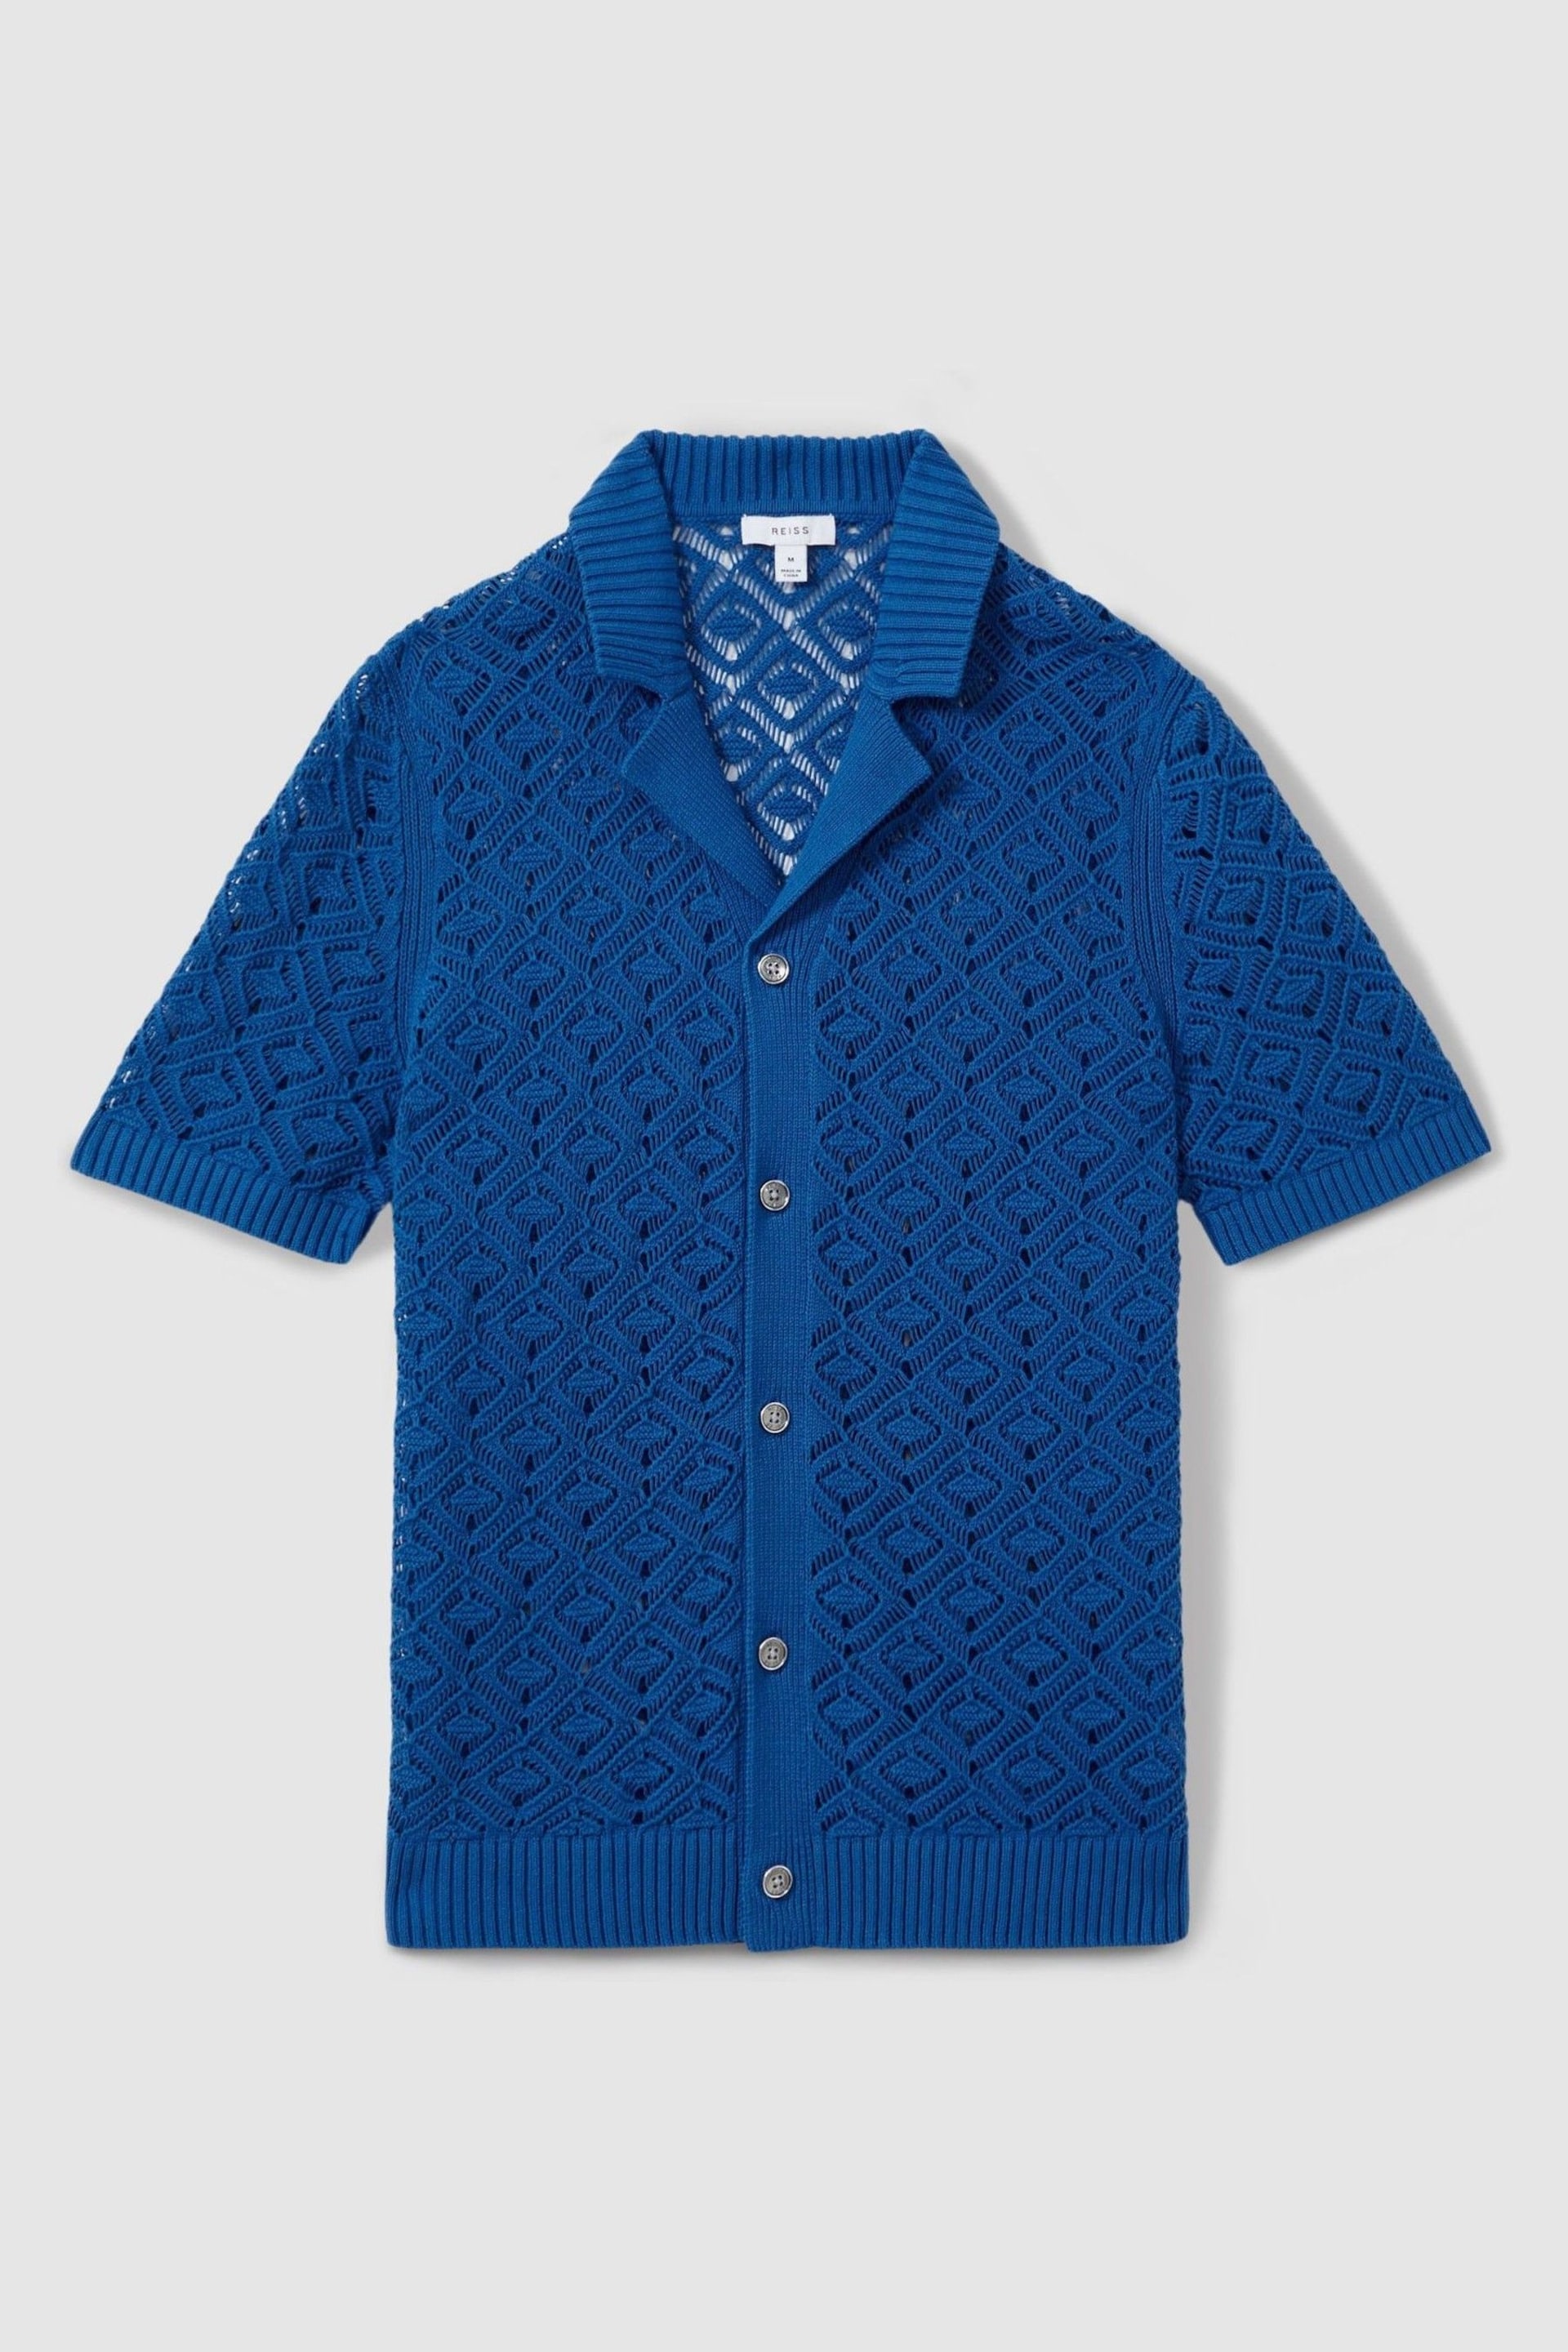 Reiss Bright Blue Corsica Crochet Cuban Collar Shirt - Image 2 of 6